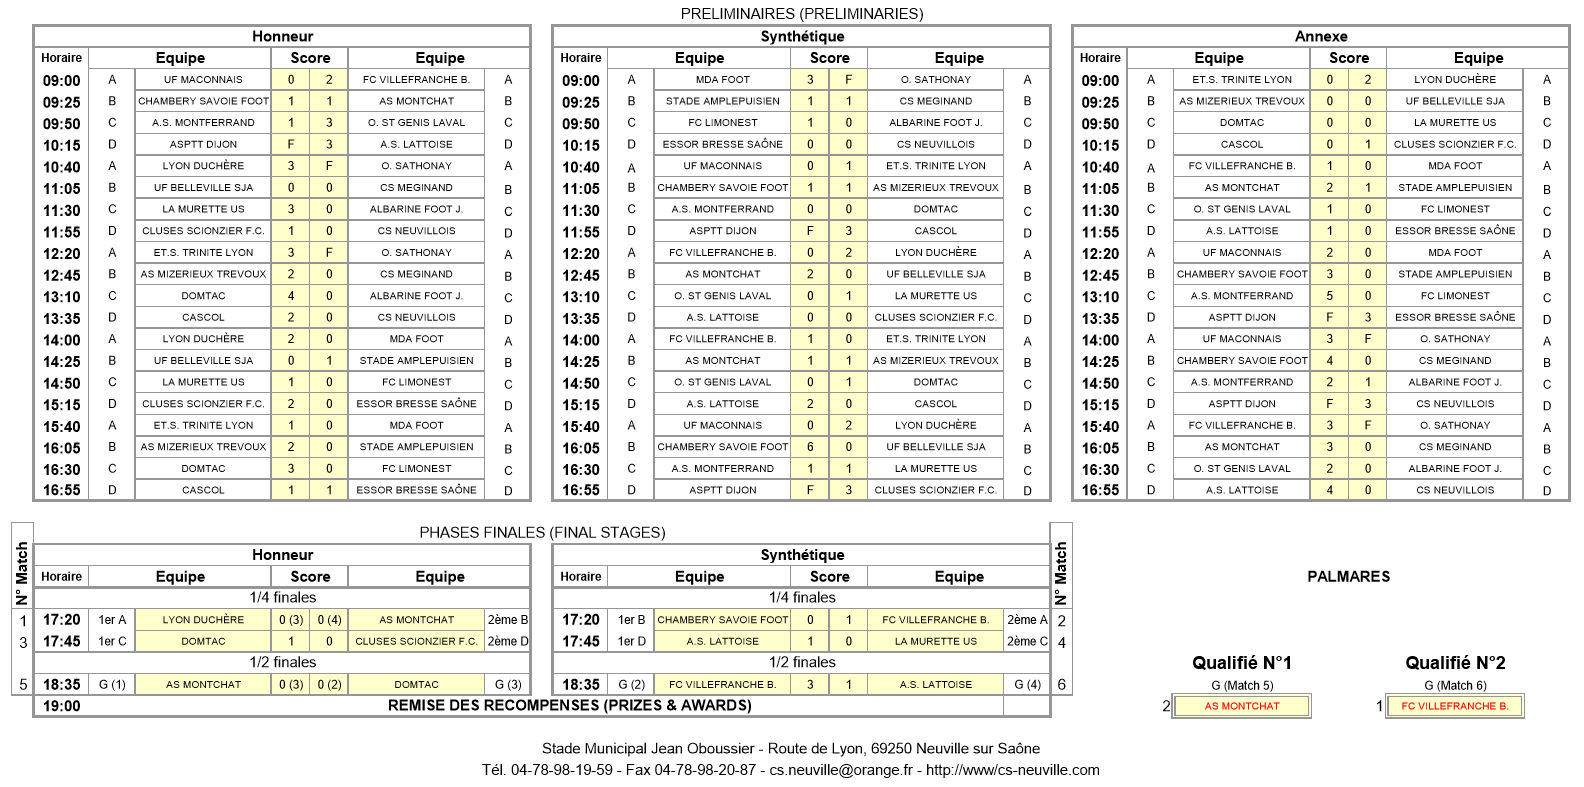 Préliminaire Challenge Piana U15 - L'AS MONTCHAT et le FC VILLEFRANCHE à la table des grands